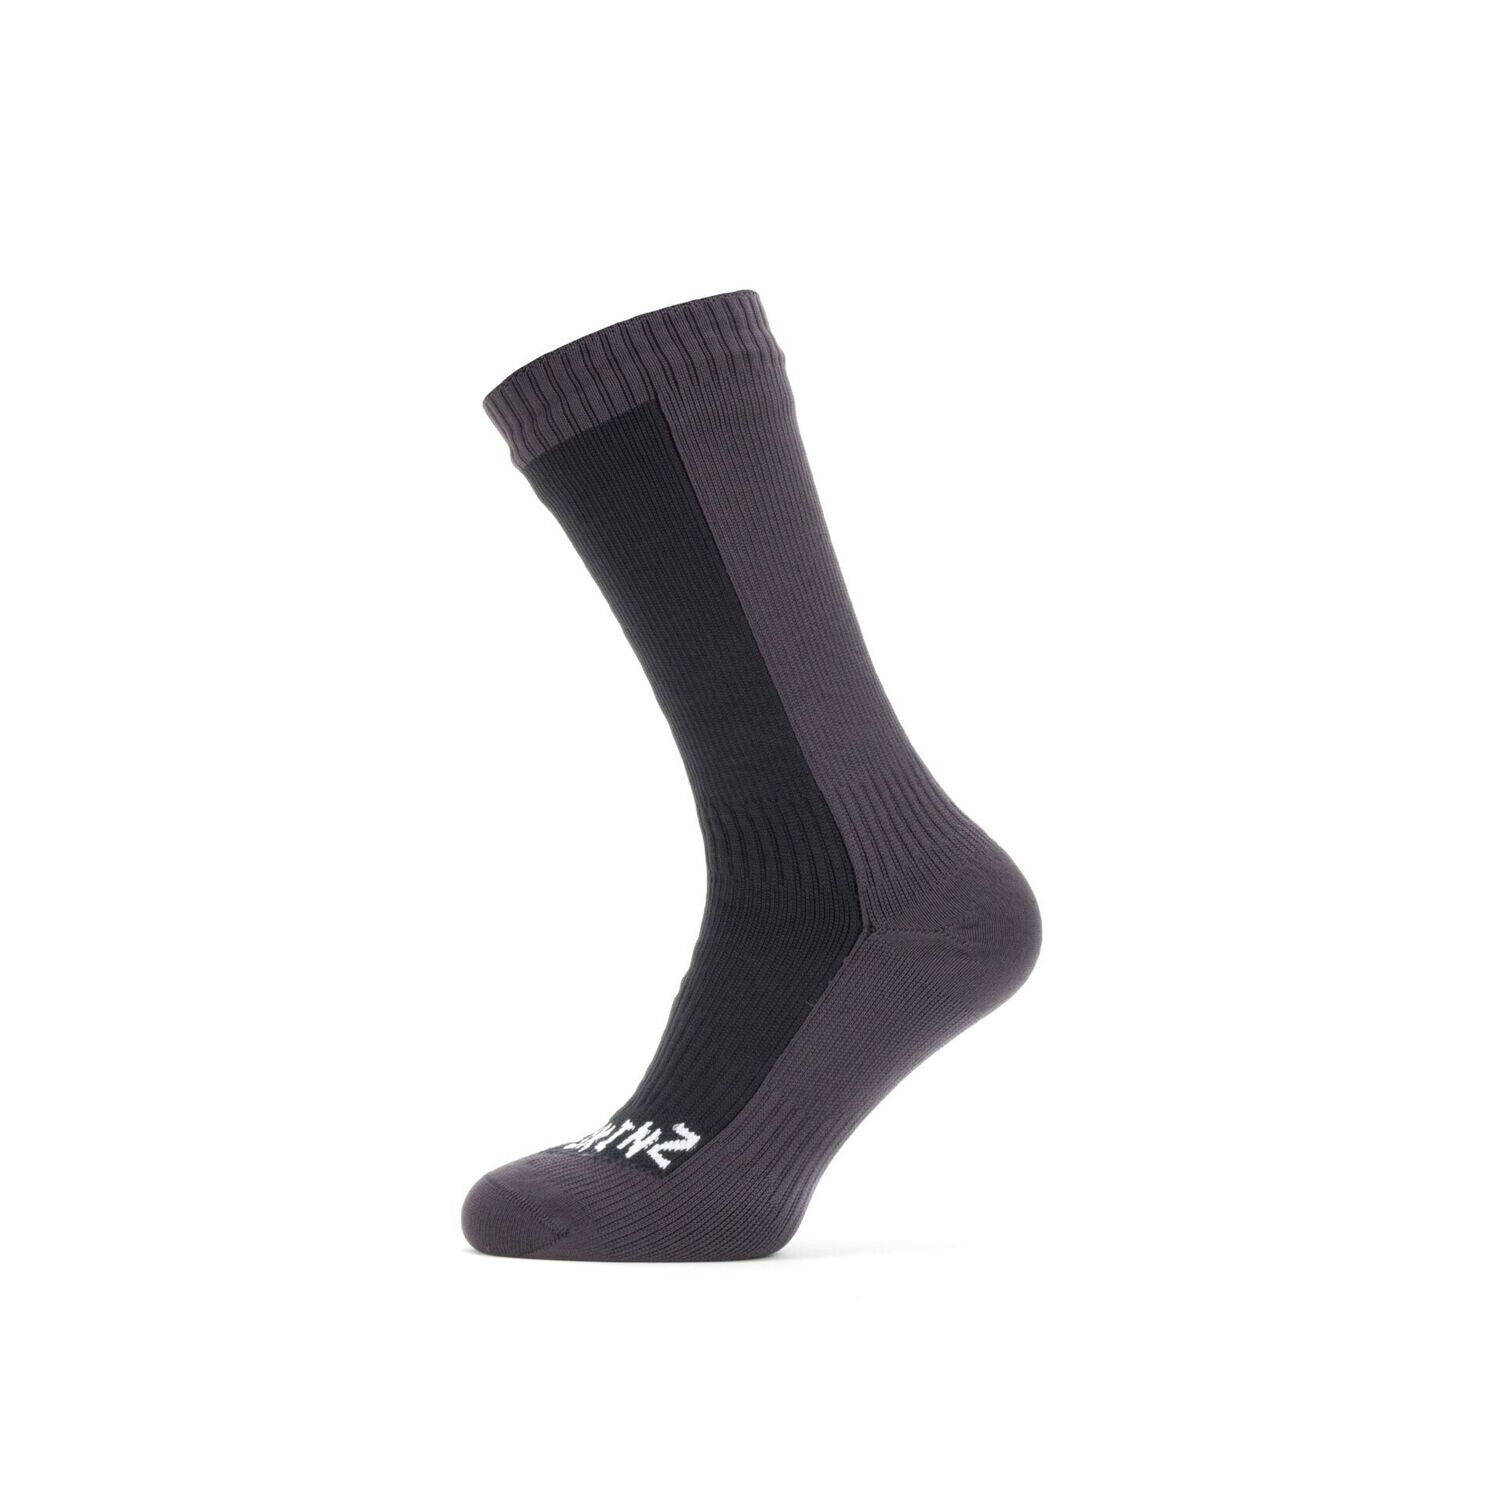 SealSkinz Waterproof Cold Weather Mid Length Sock - Wandersocken, Größe: S (36-38), Farbe: black/grey